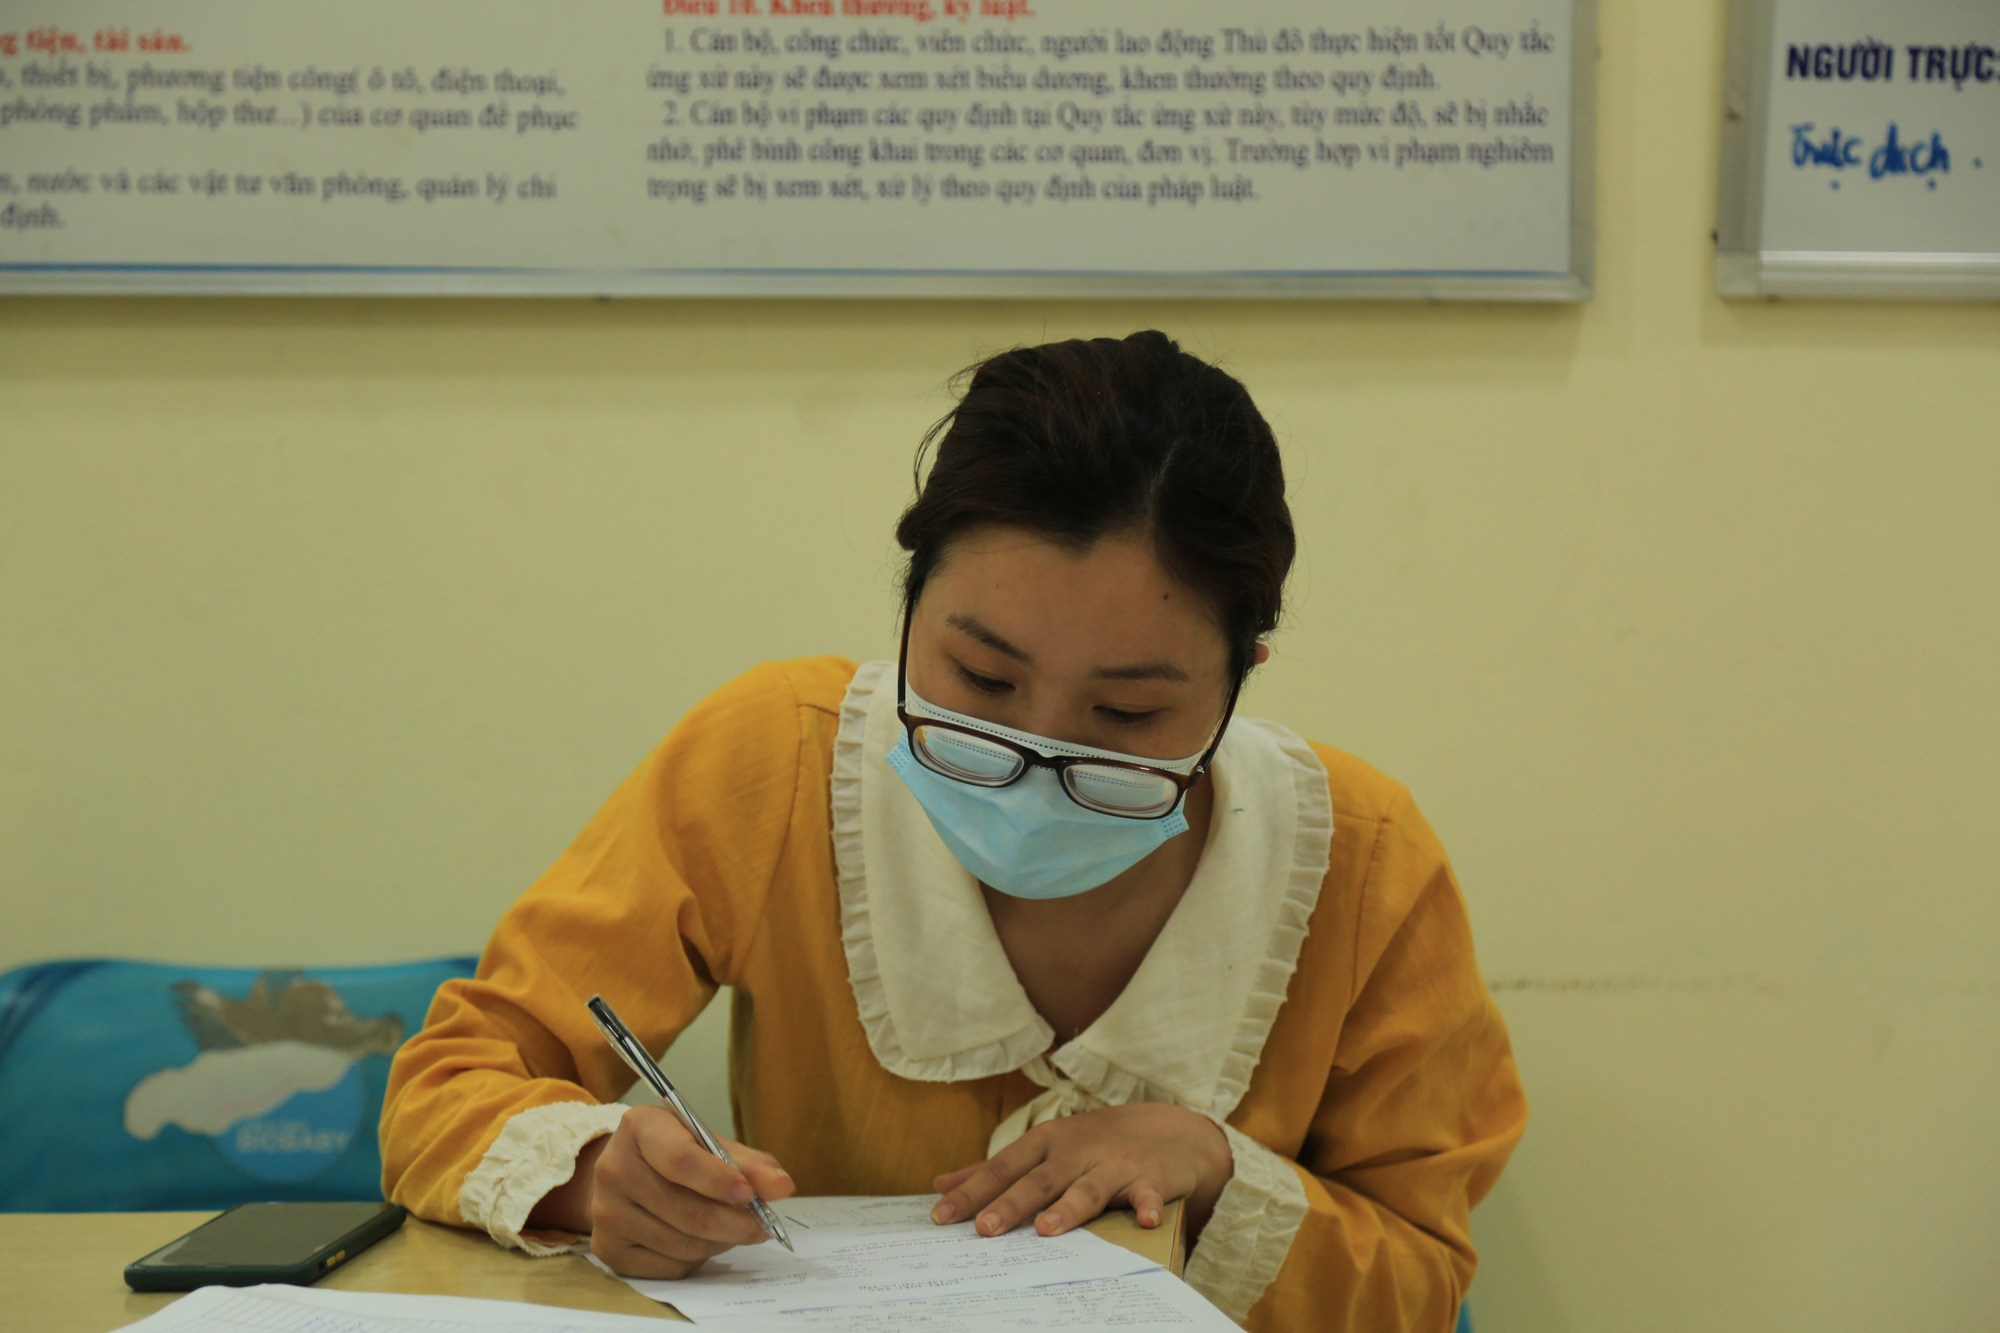 Người từ vùng dịch Hải Dương về Hà Nội xếp hàng khai báo y tế, chủ động cách ly phòng dịch Covid-19 - Ảnh 4.